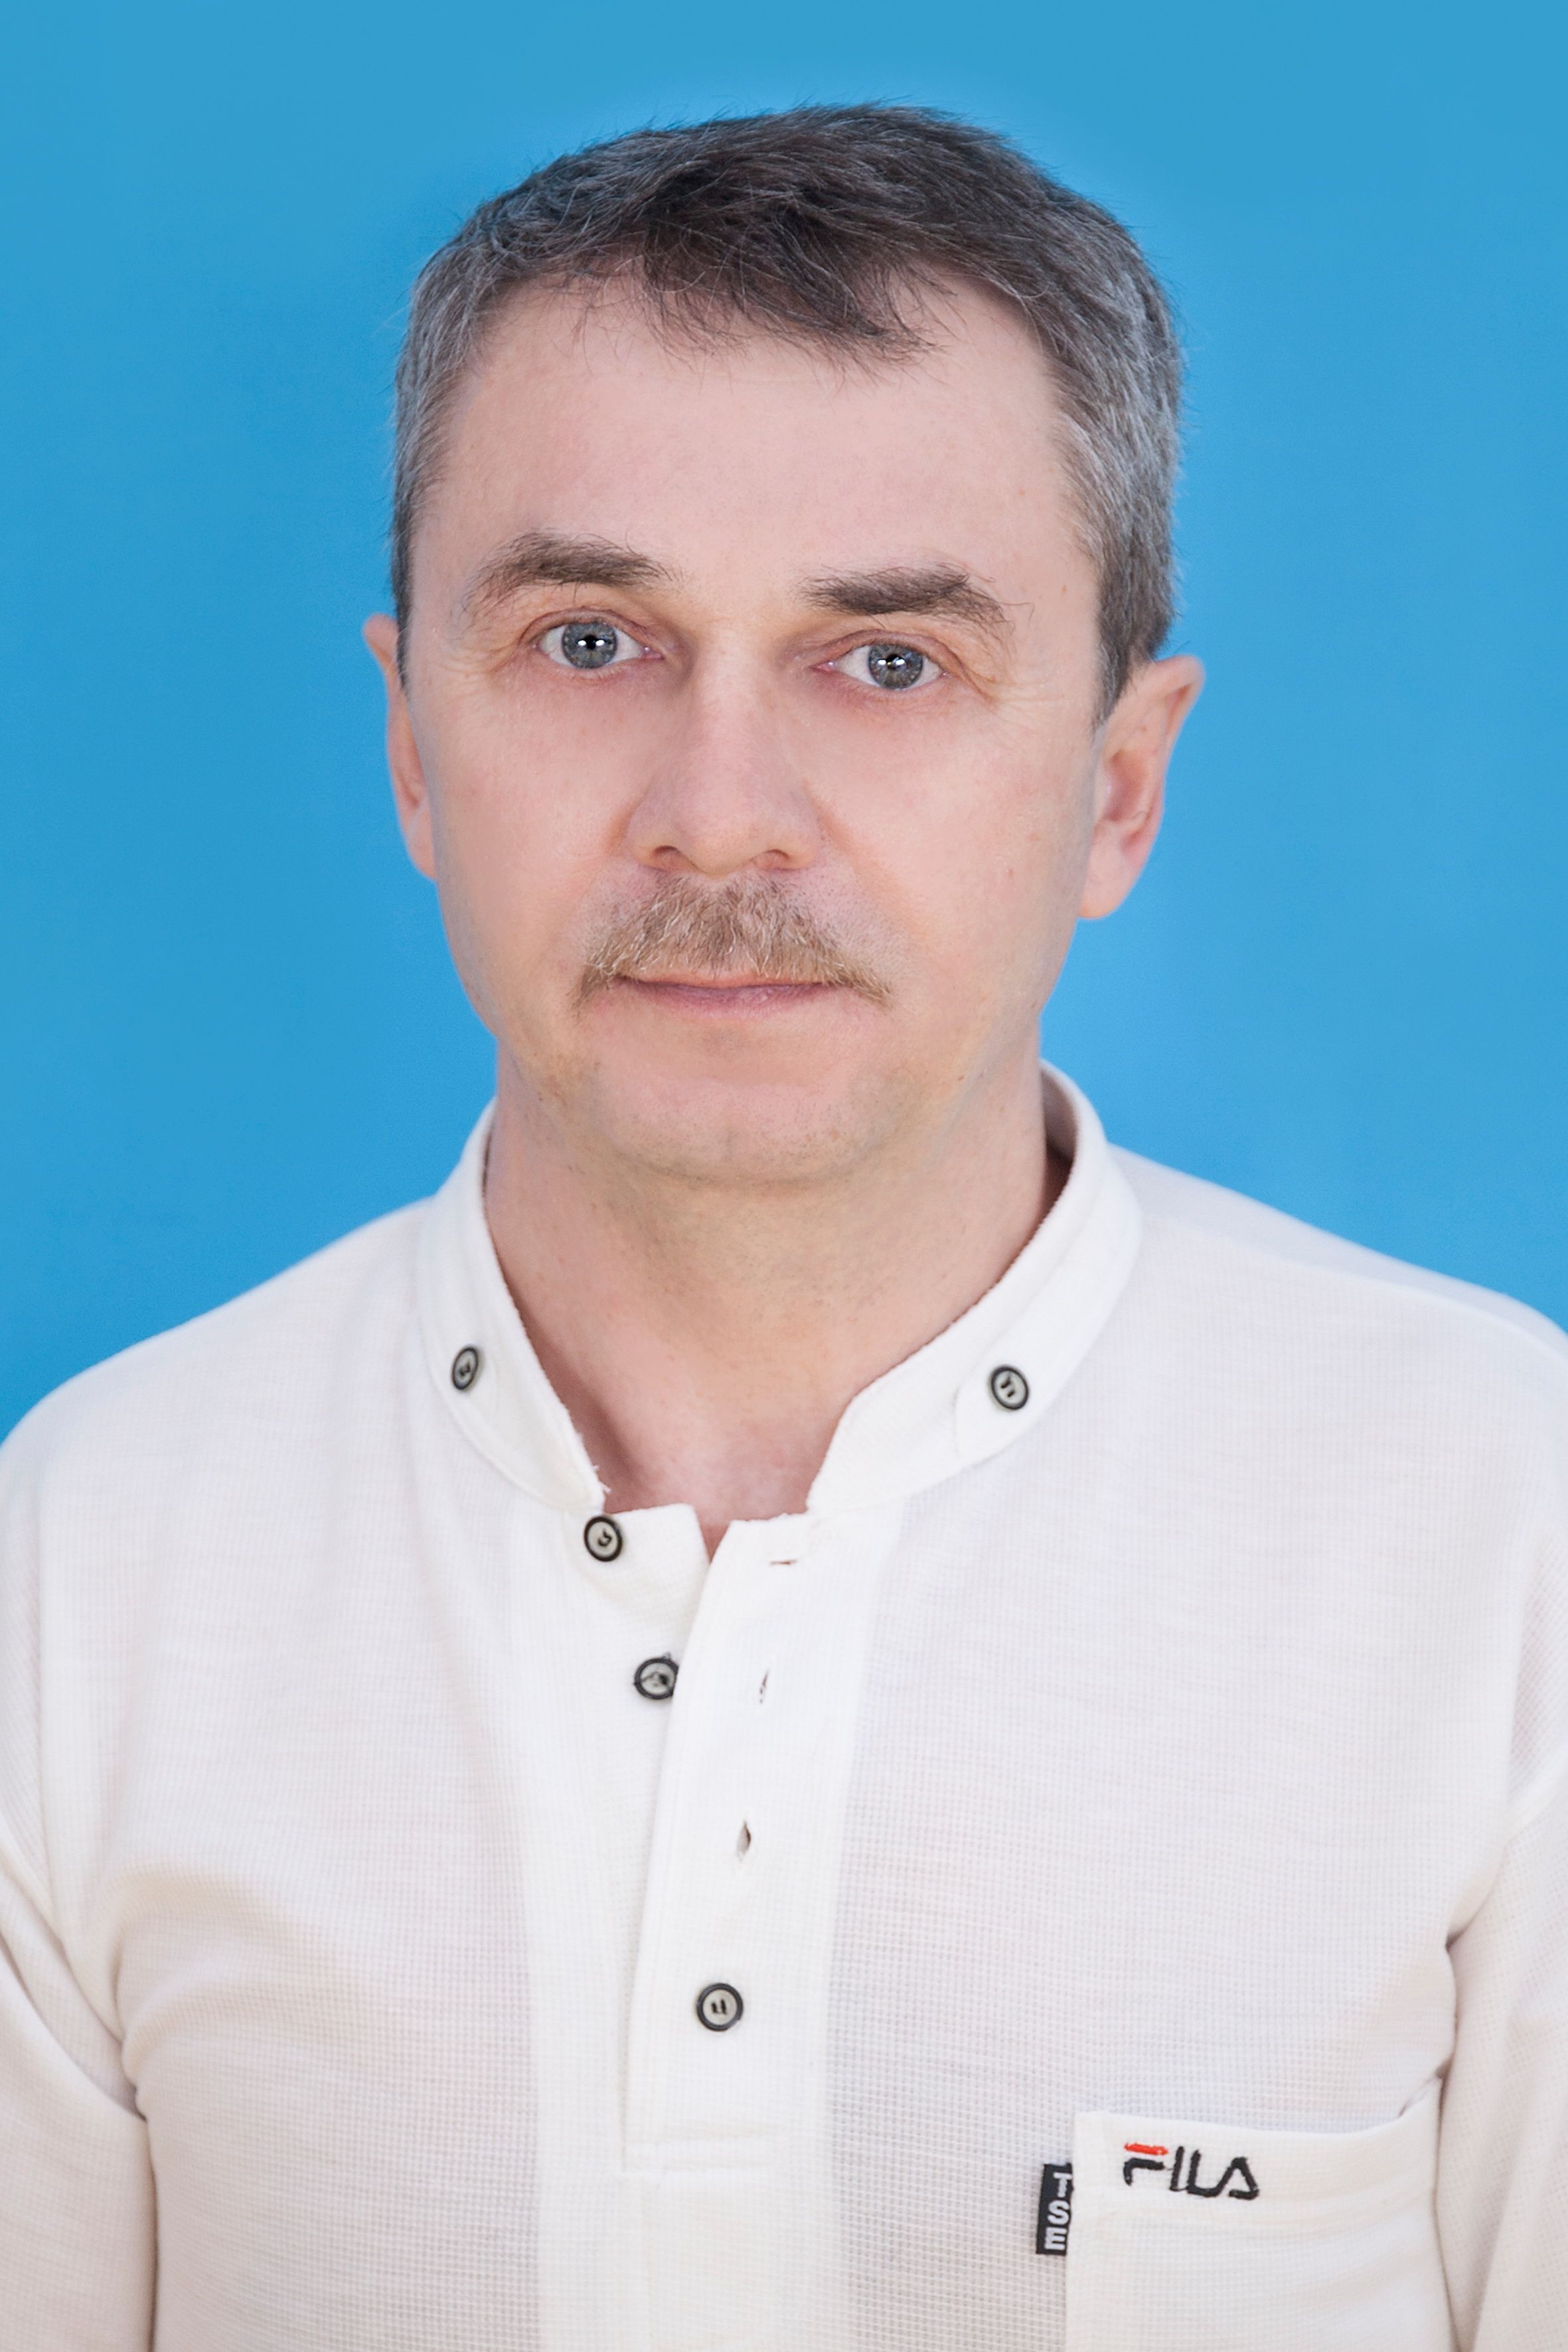 Скачко Александр Владимирович.